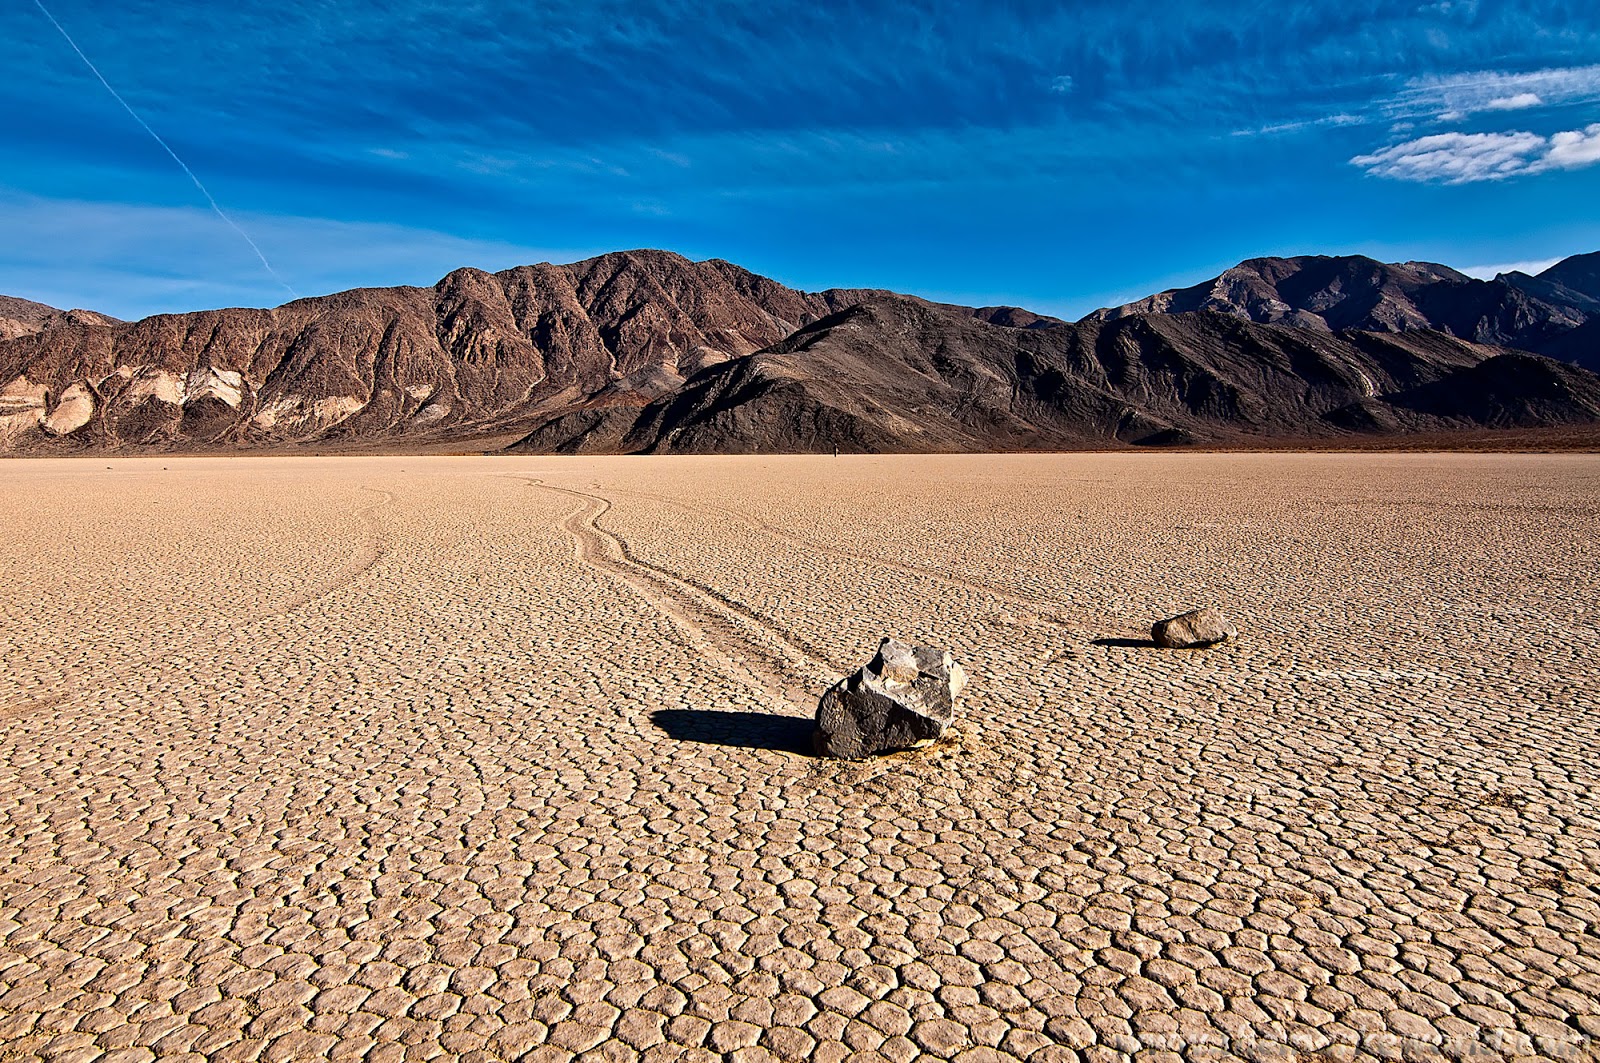 Самая большая пустыня на планете земля. Национальный парк Долина смерти в Калифорнии. Пустыня Мохаве Долина смерти. Национальный парк Долины смерти, Калифорния.. Долина смерти (Калифорния - Невада).